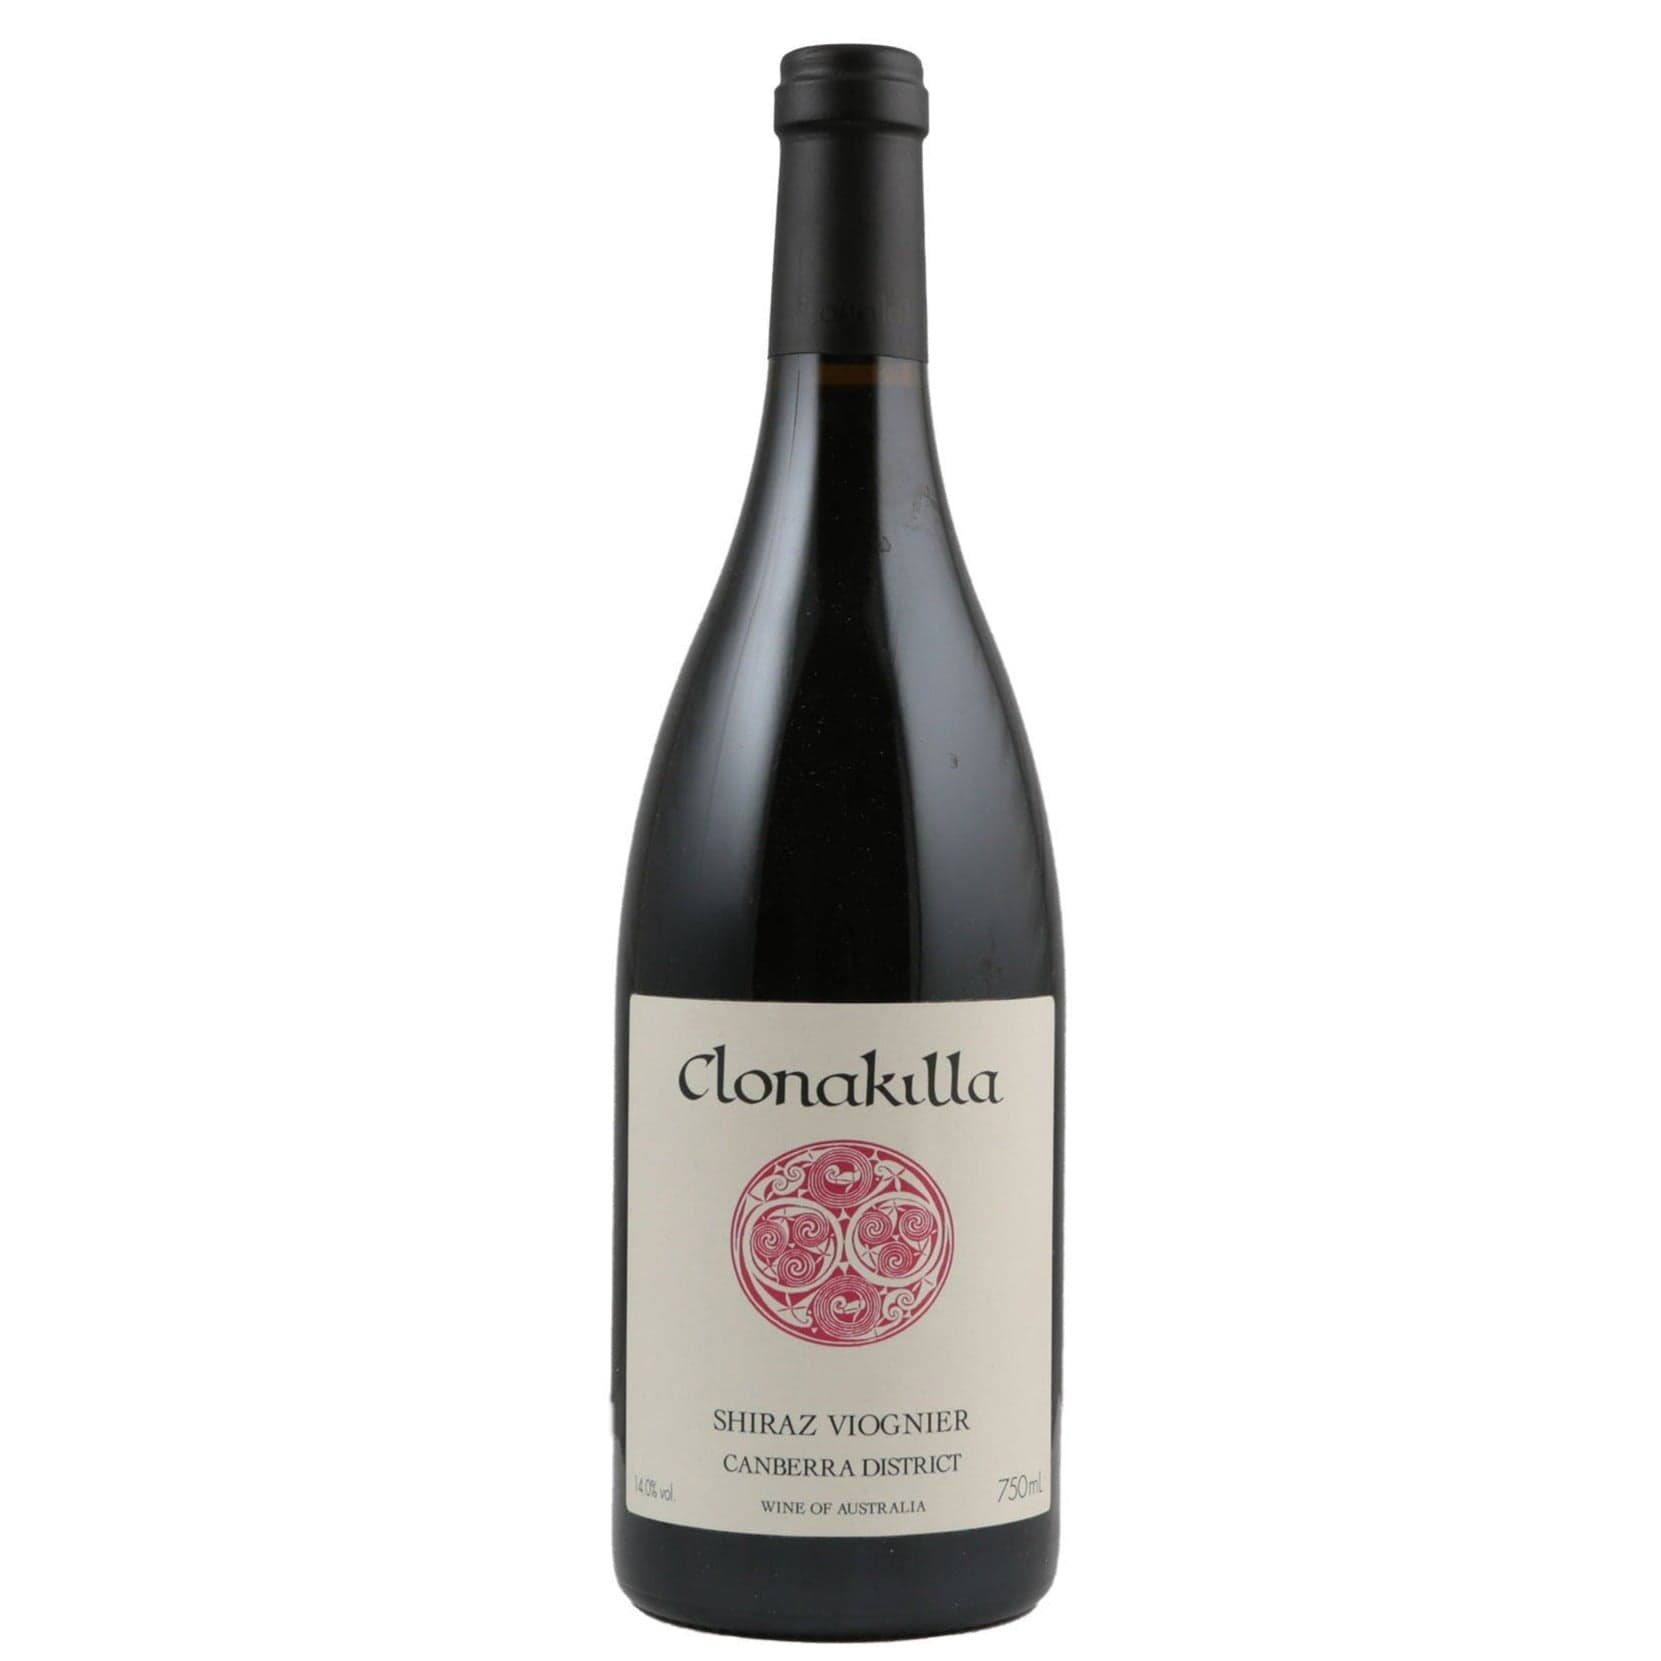 Single bottle of Red wine Clonakilla, Shiraz-Viognier Canberra District, 2016 95% Shiraz, 5% Viognier